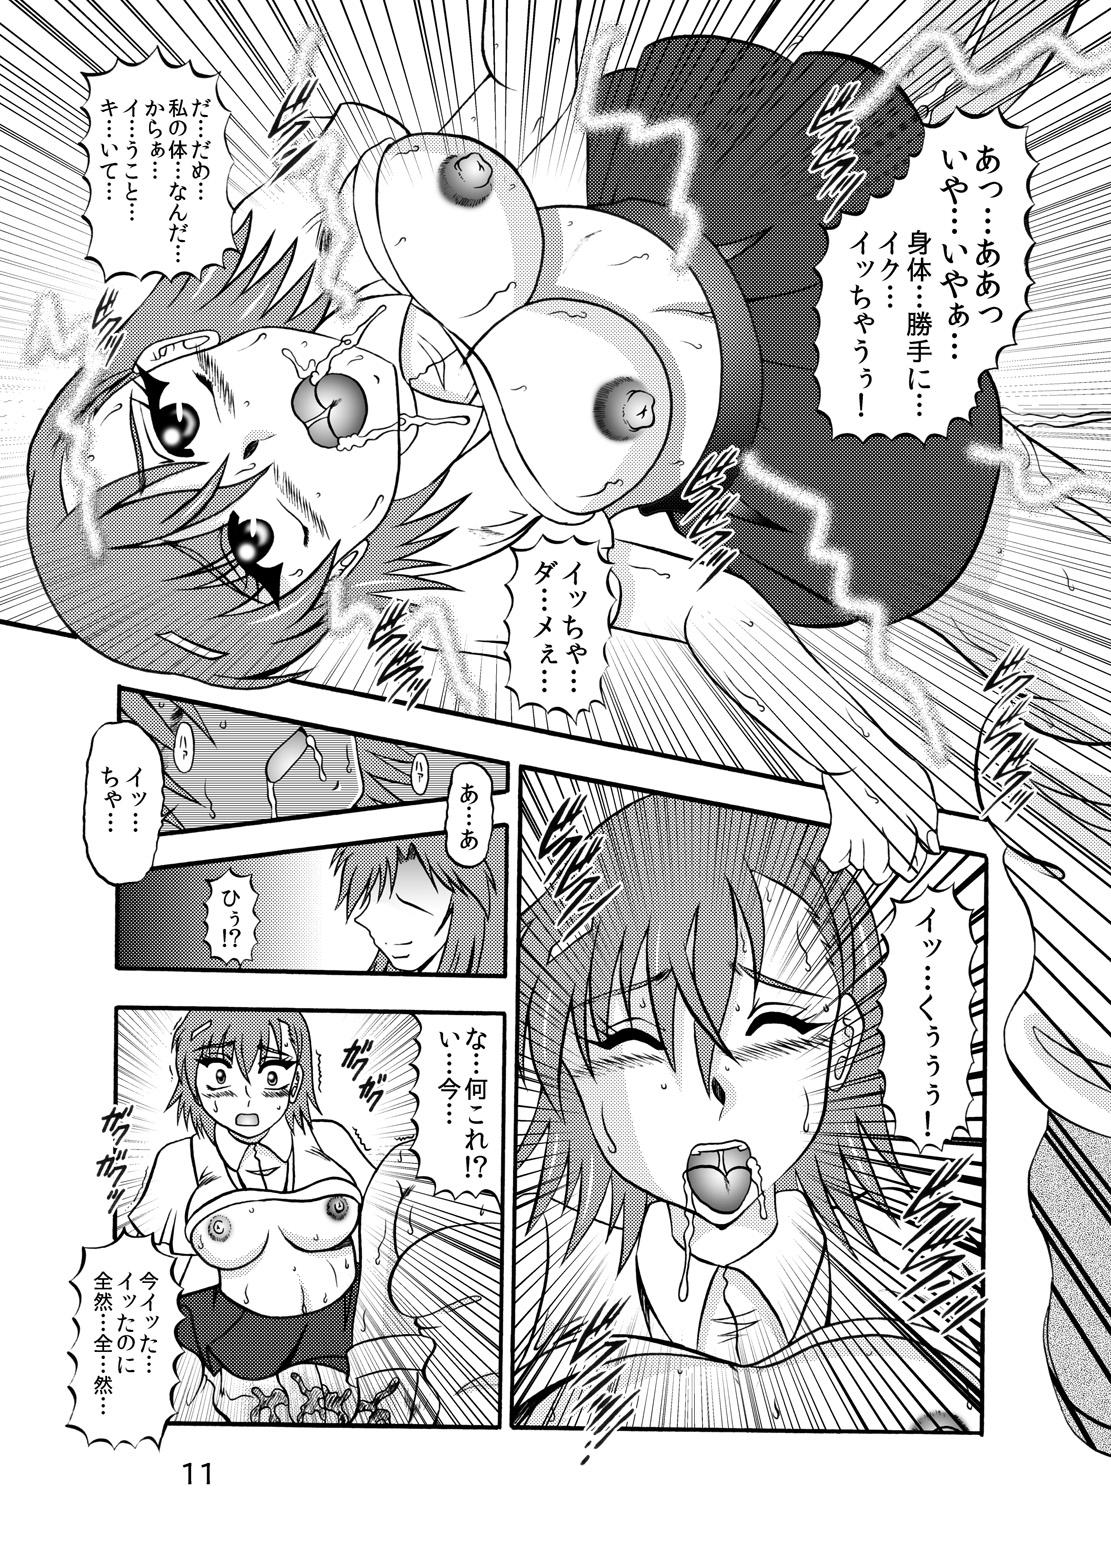 Dom Inyoku Kaizou: Misaka Mikoto - Toaru kagaku no railgun Nerd - Page 9